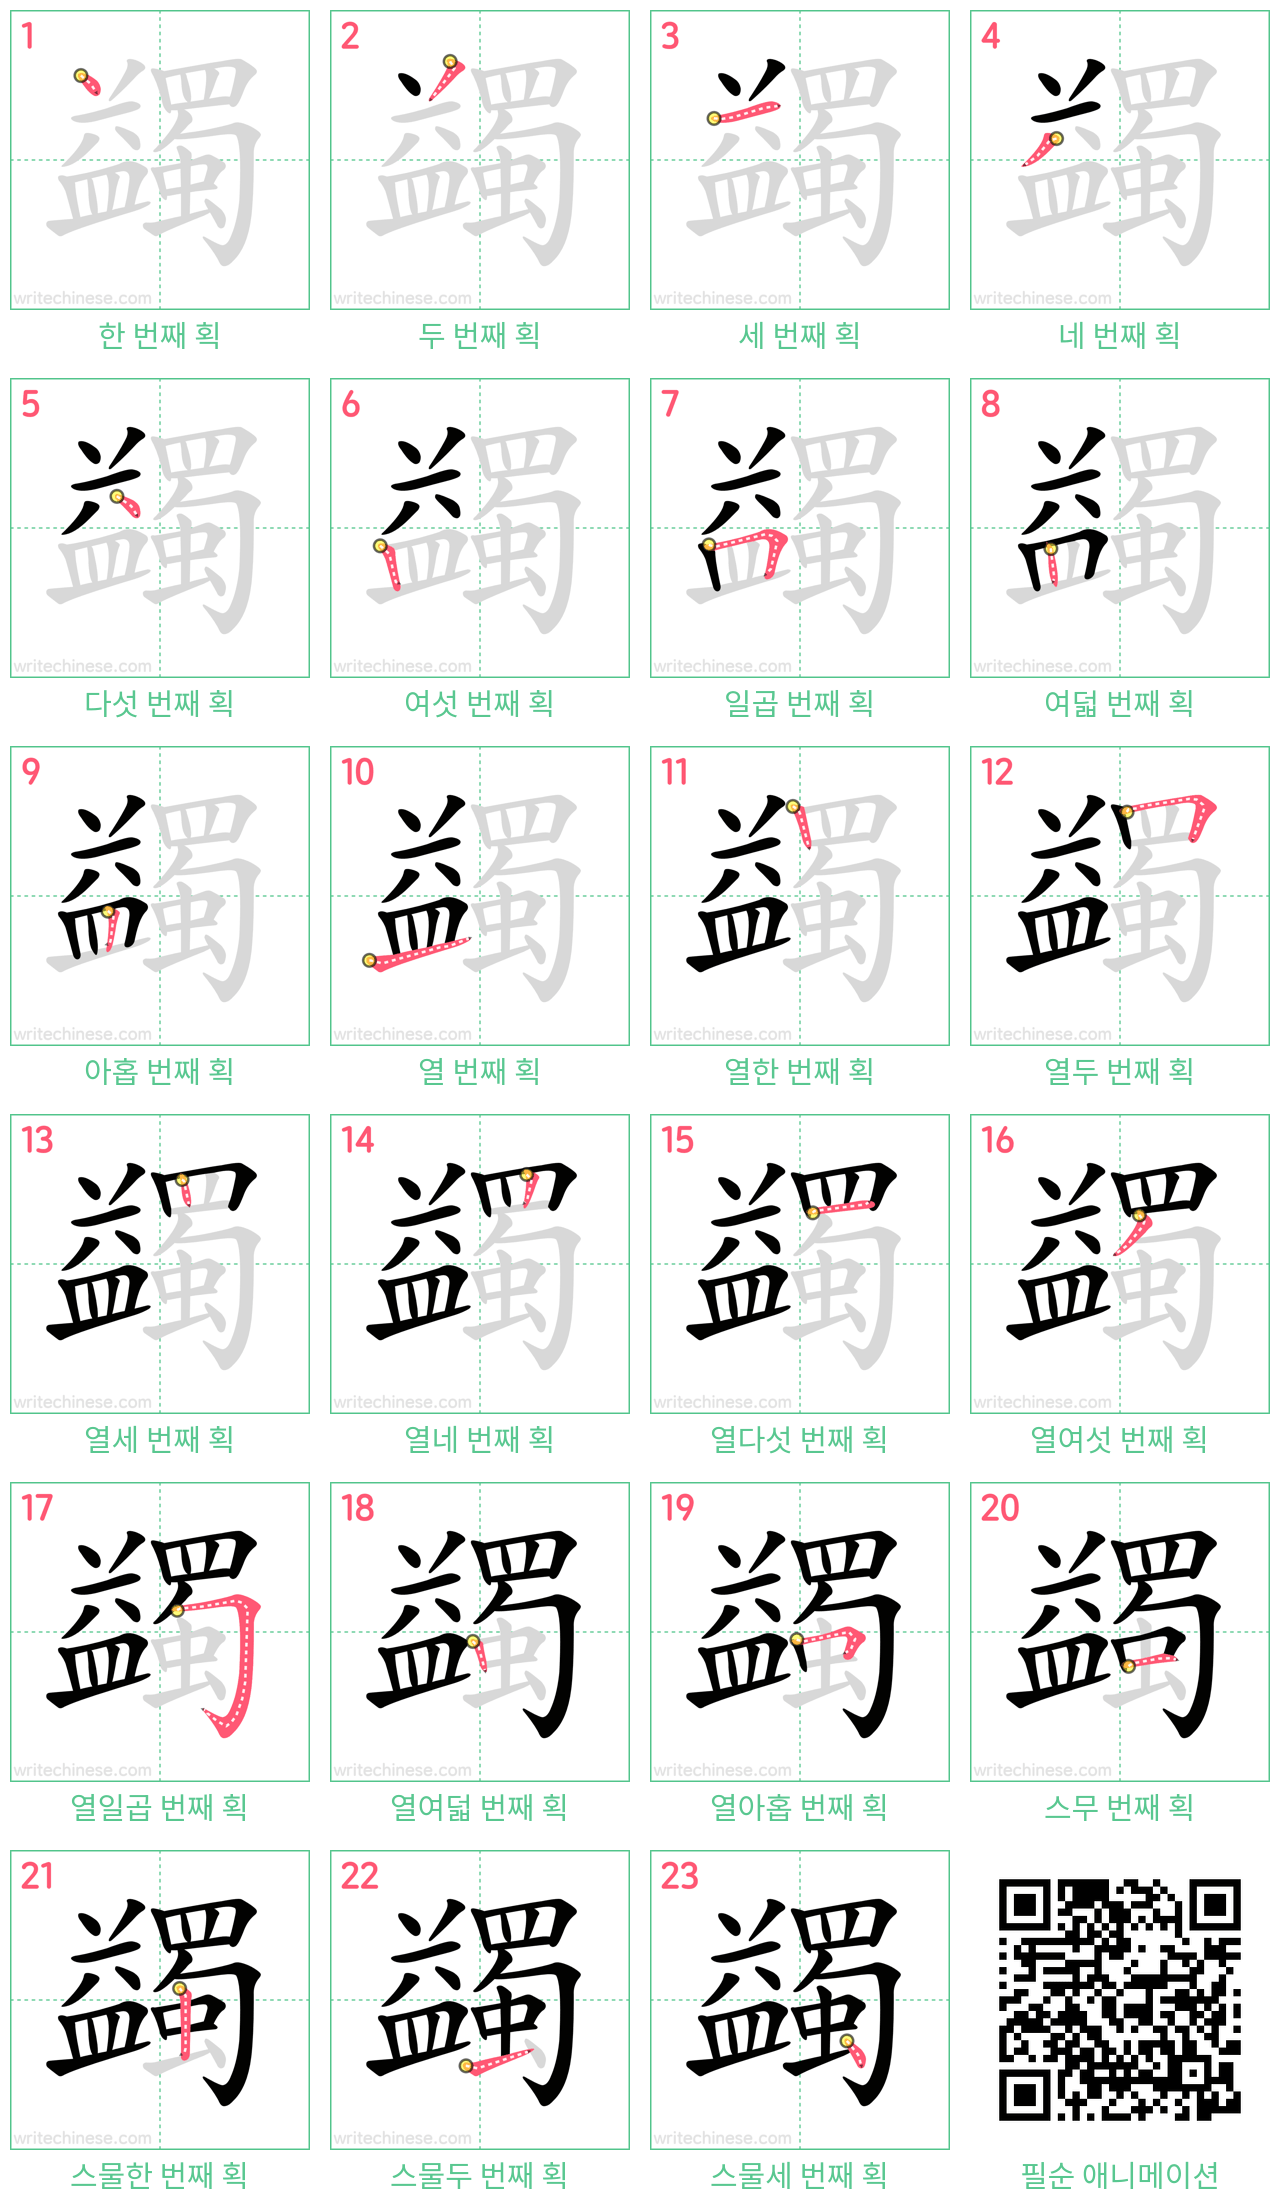 蠲 step-by-step stroke order diagrams